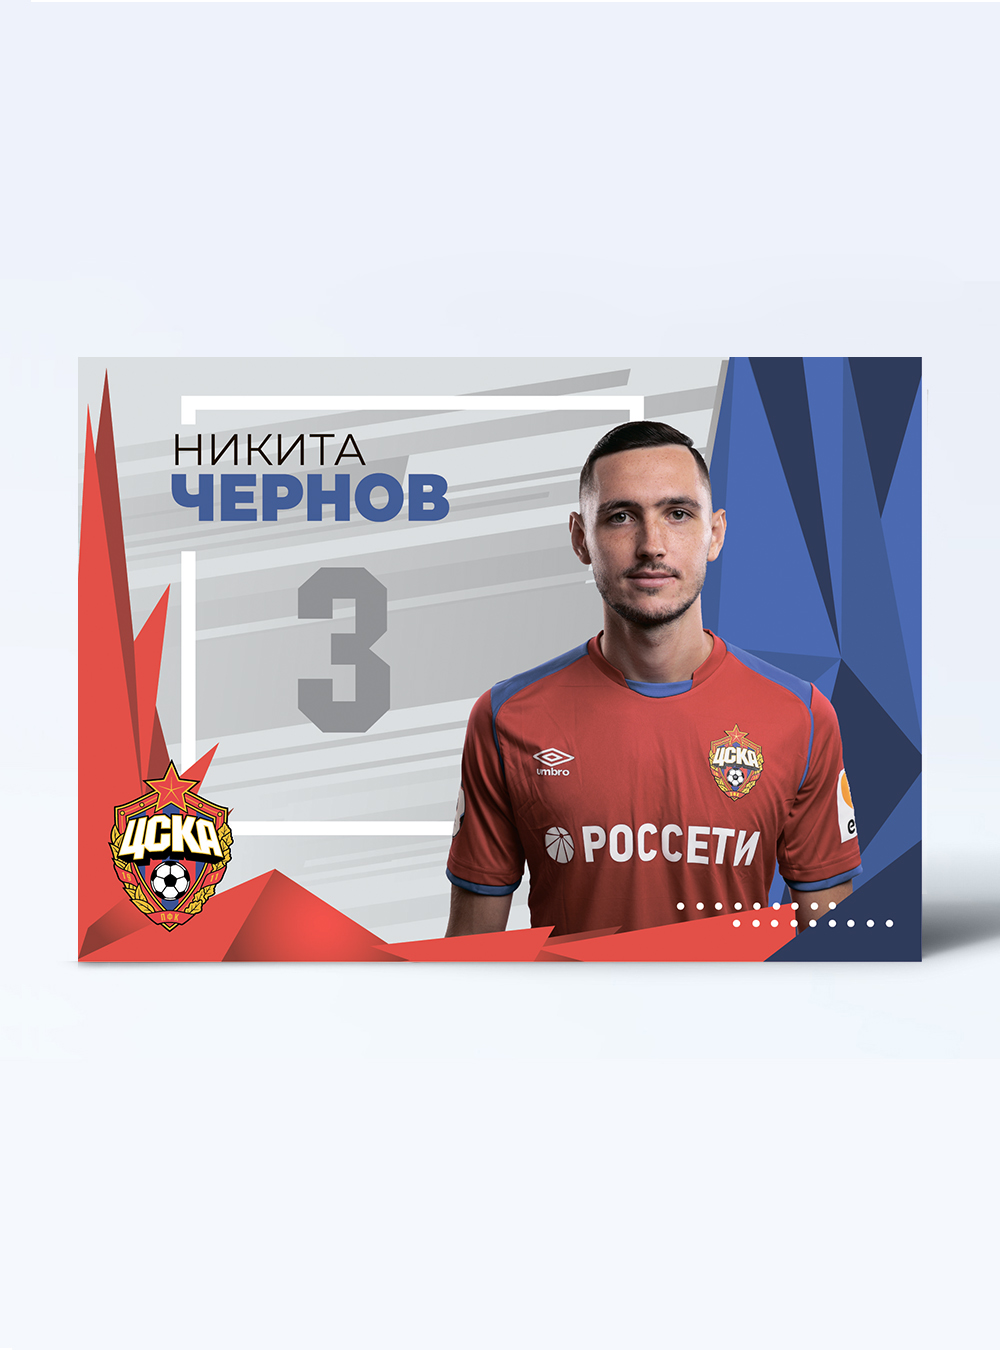 Карточка для автографа Чернов 2019/2020 от Cskashop